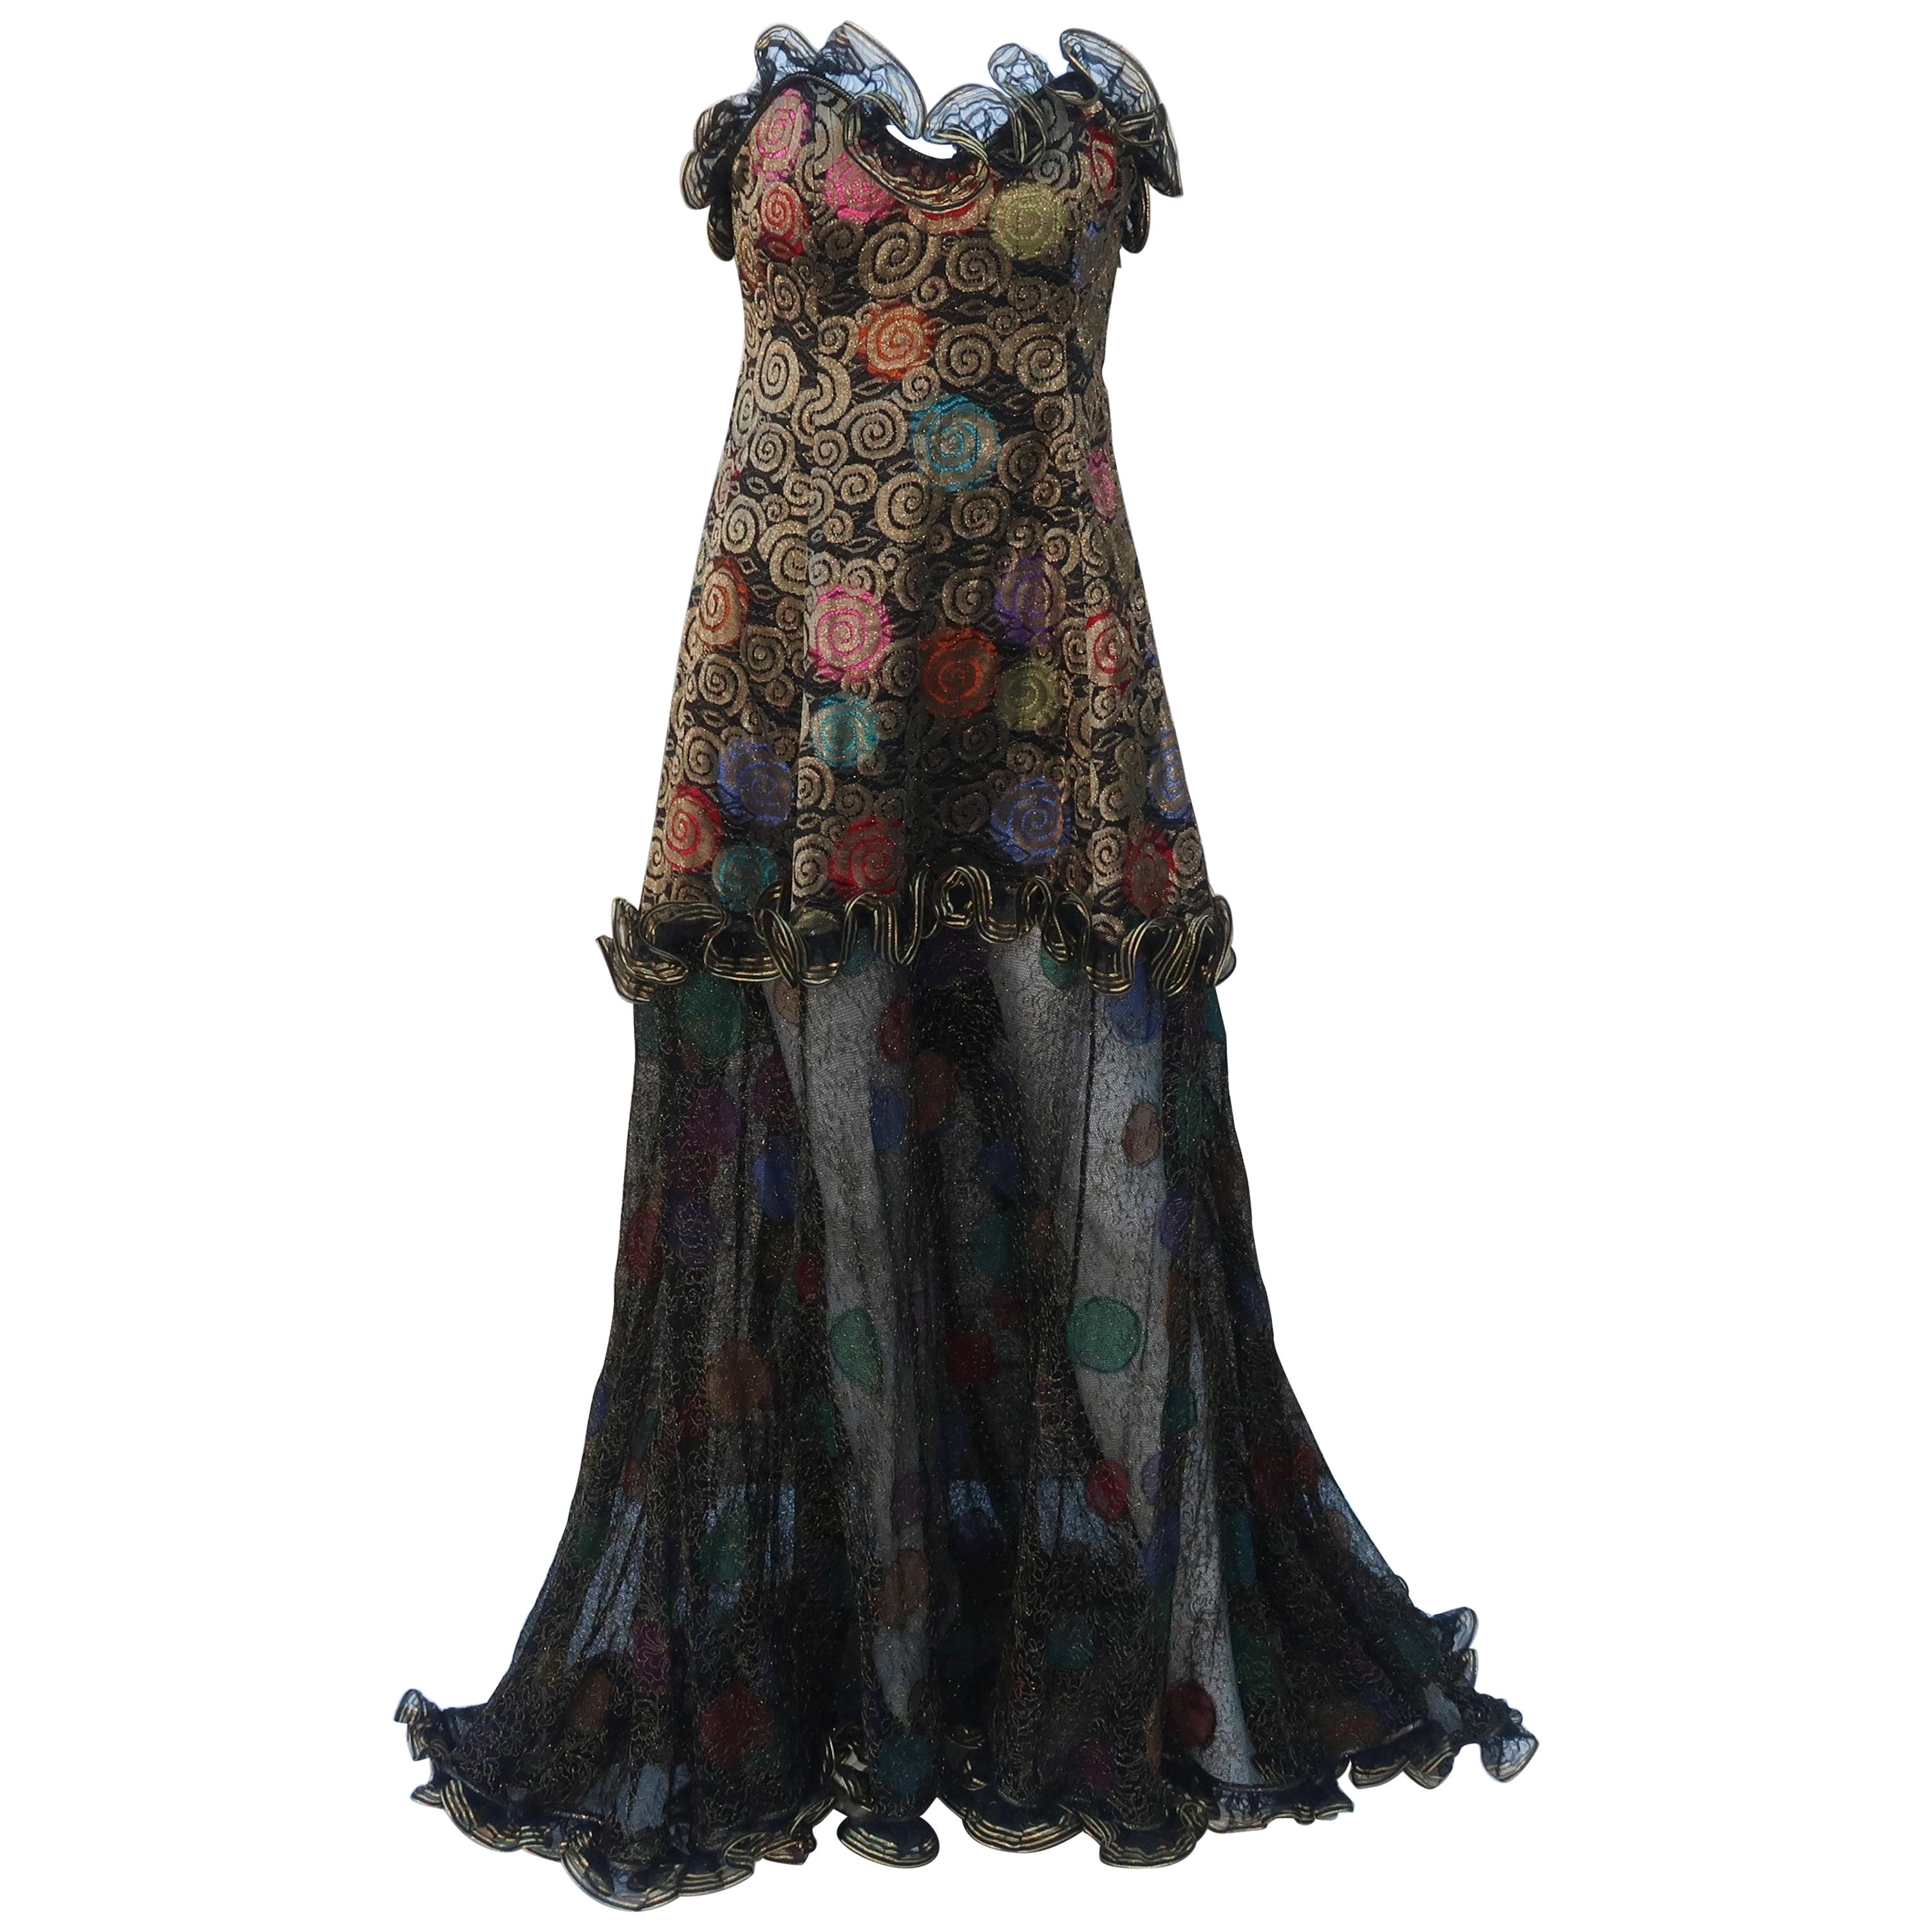 Geoffrey Beene Klimt Inspired Strapless Evening Dress, 1988